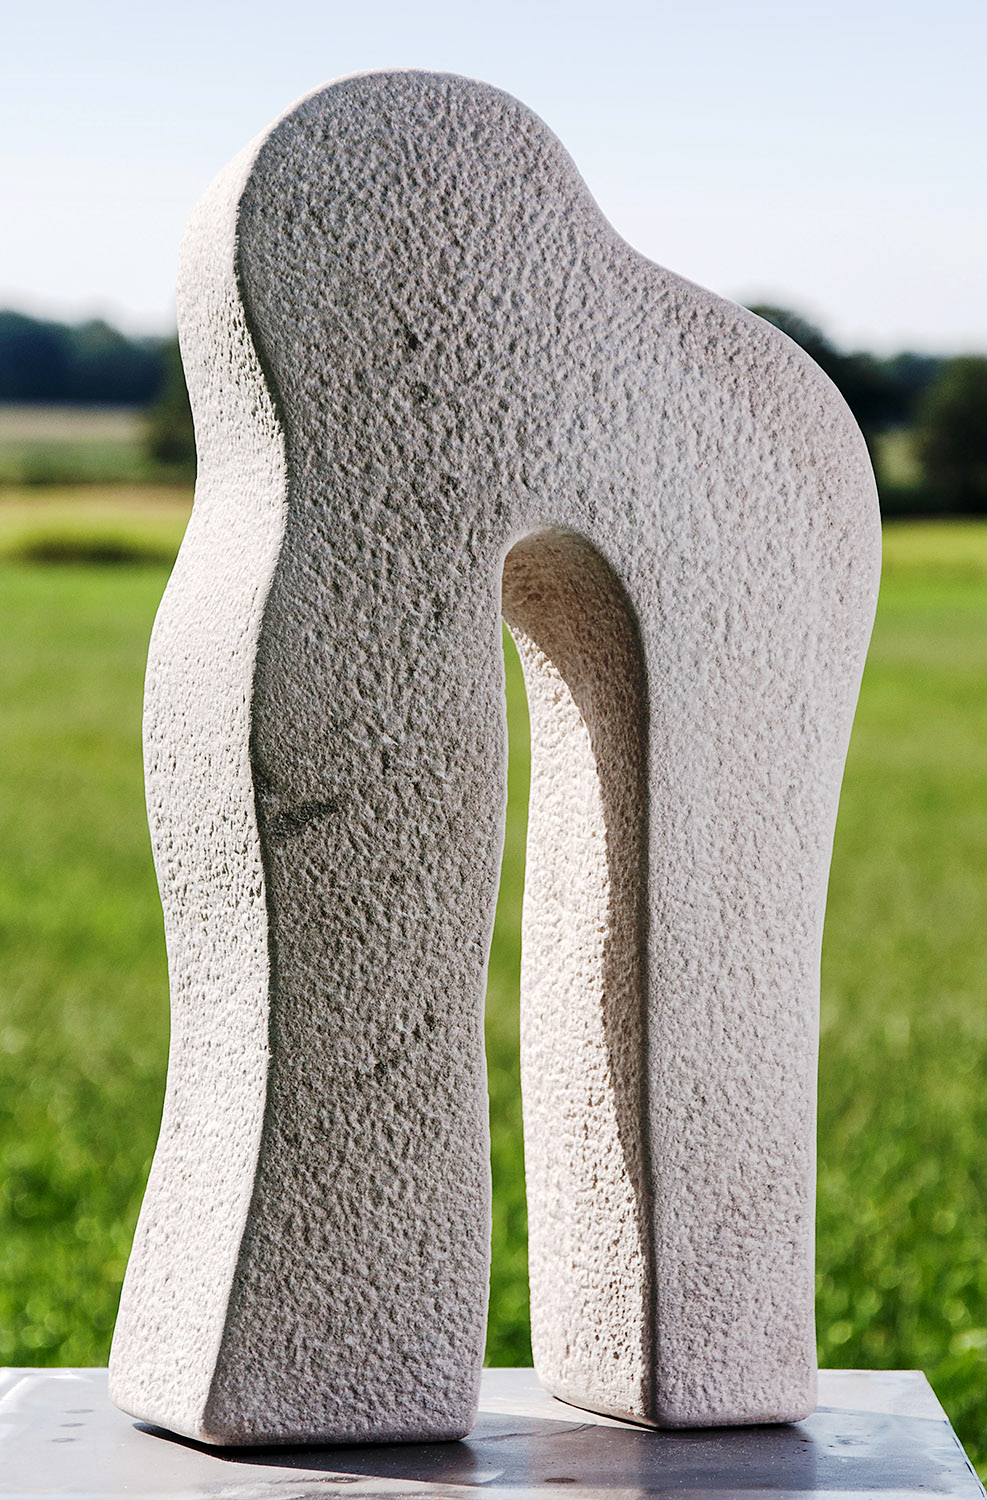 Tor organisch, Sandstein, Höhe 55 cm, 2013